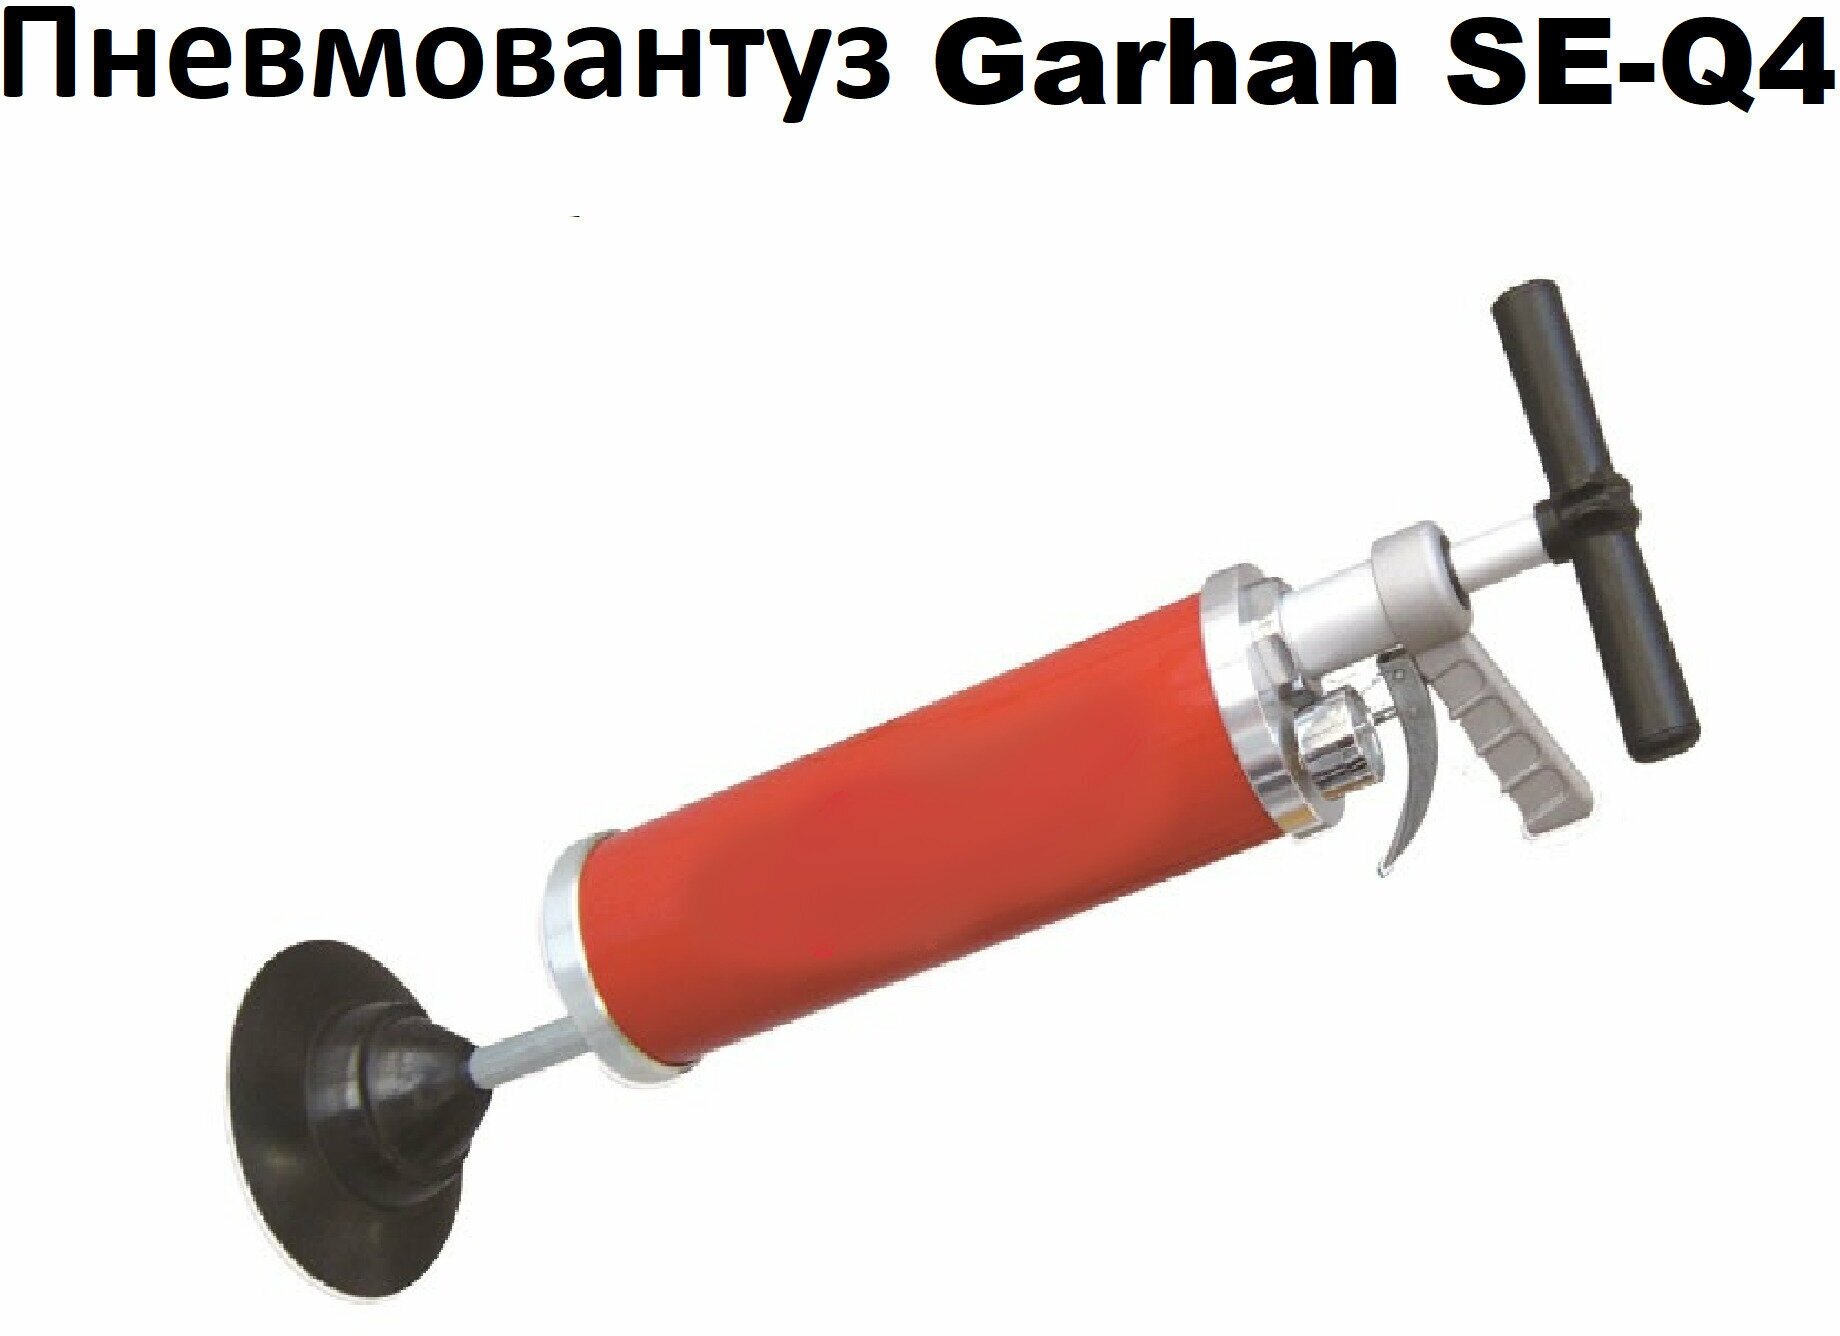 Вантуз пневматический, Garhan насосного типа с регулировкой давления до 7 бар Пневмовантуз.